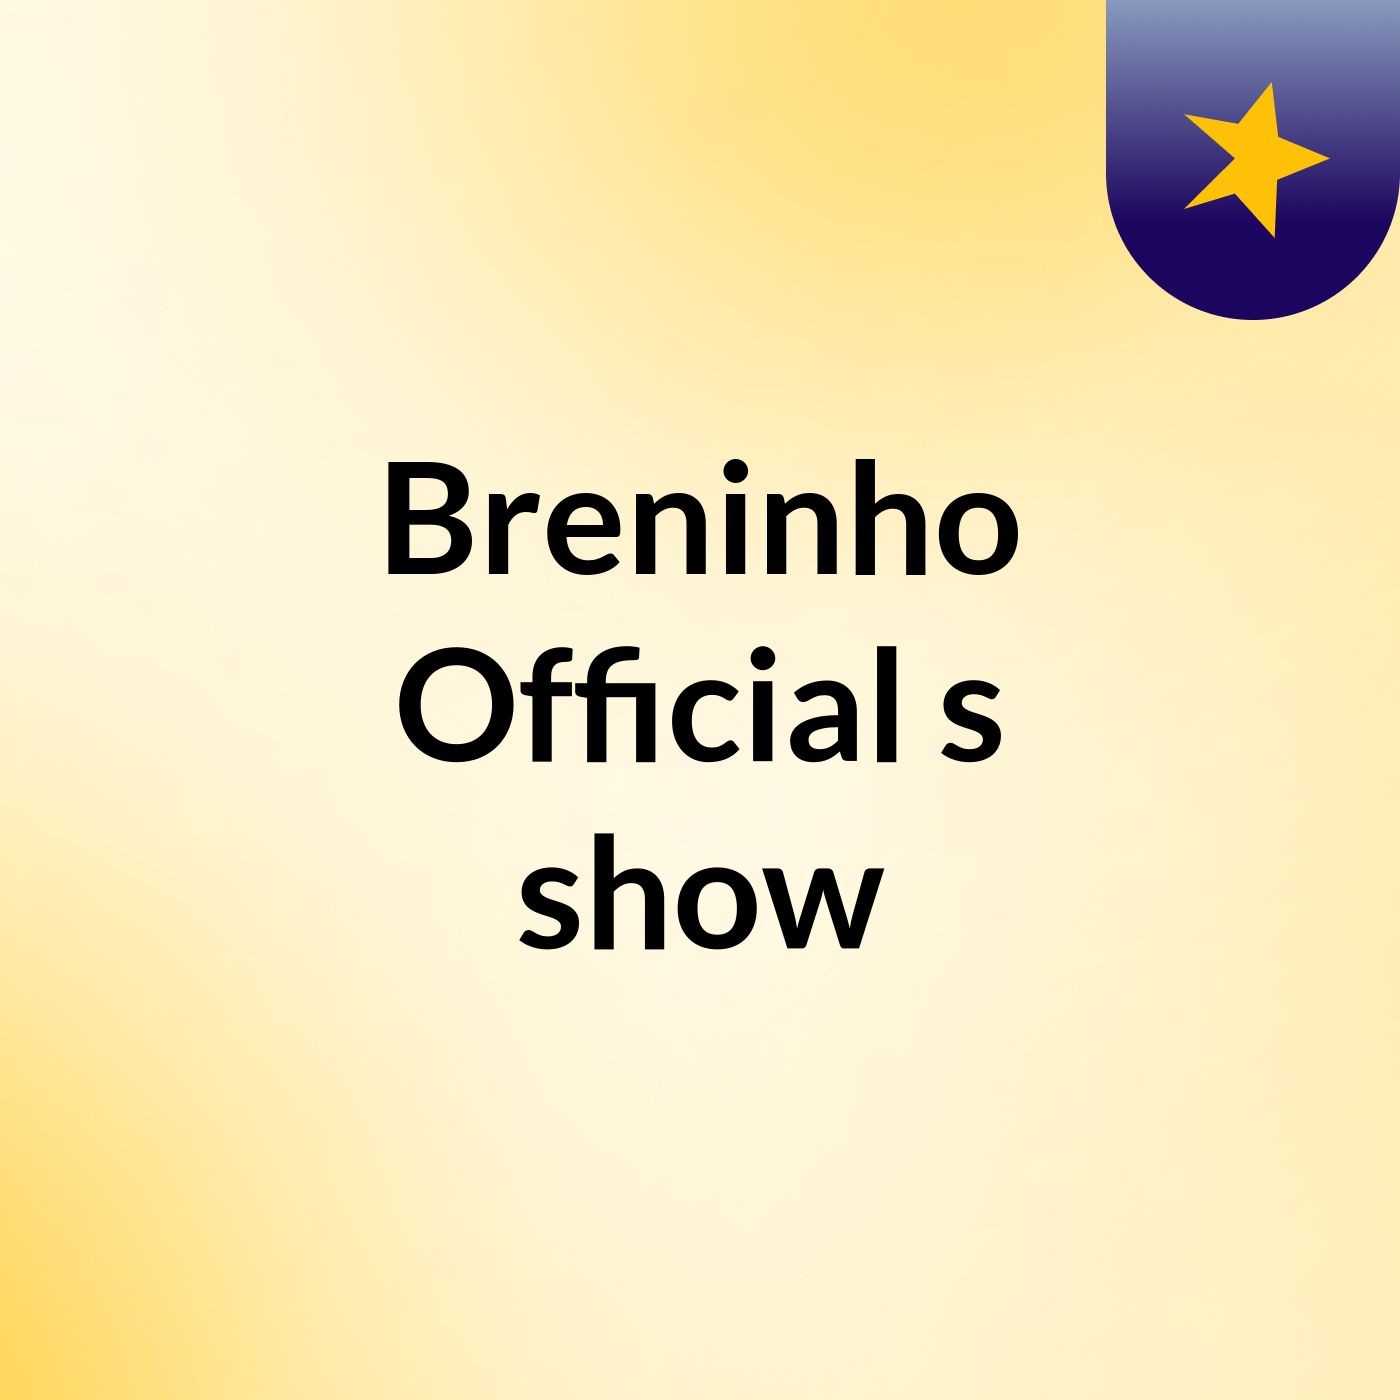 Breninho Official's show